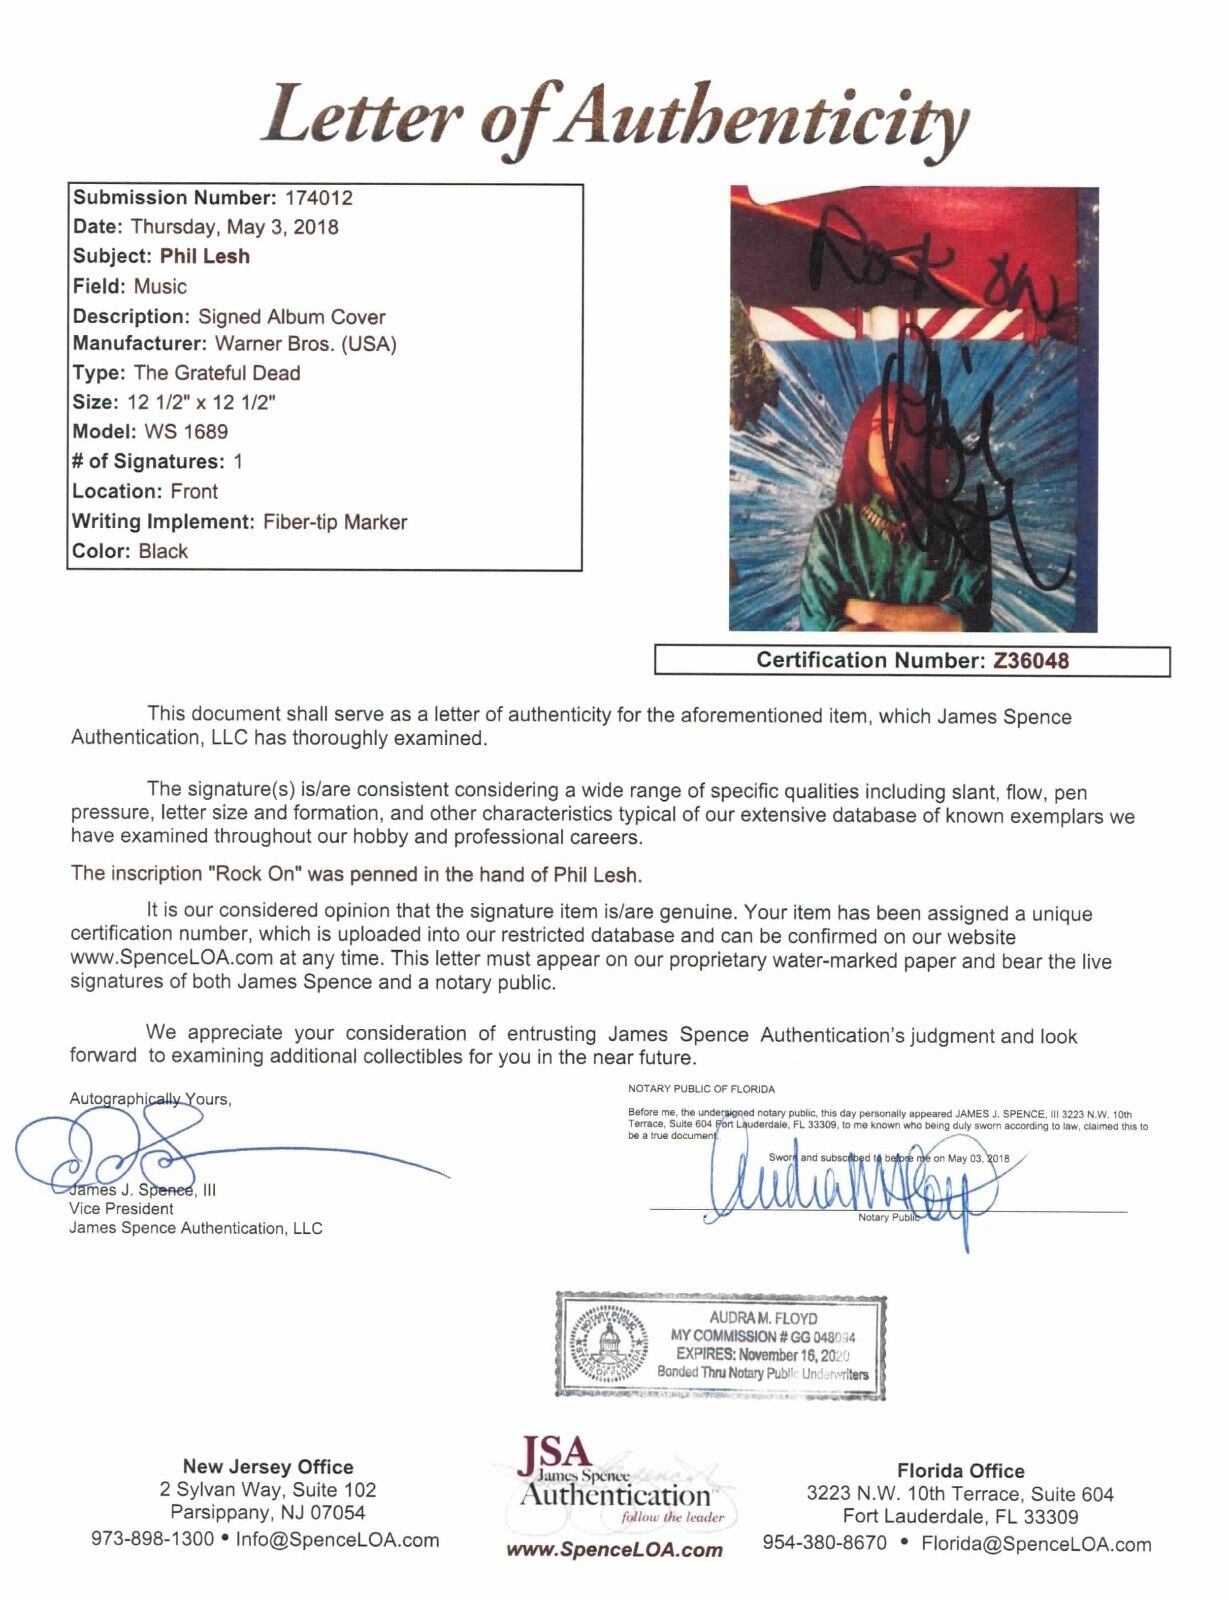 Phil Lesh Grateful Dead JSA Signed Autograph Record Album Vinyl